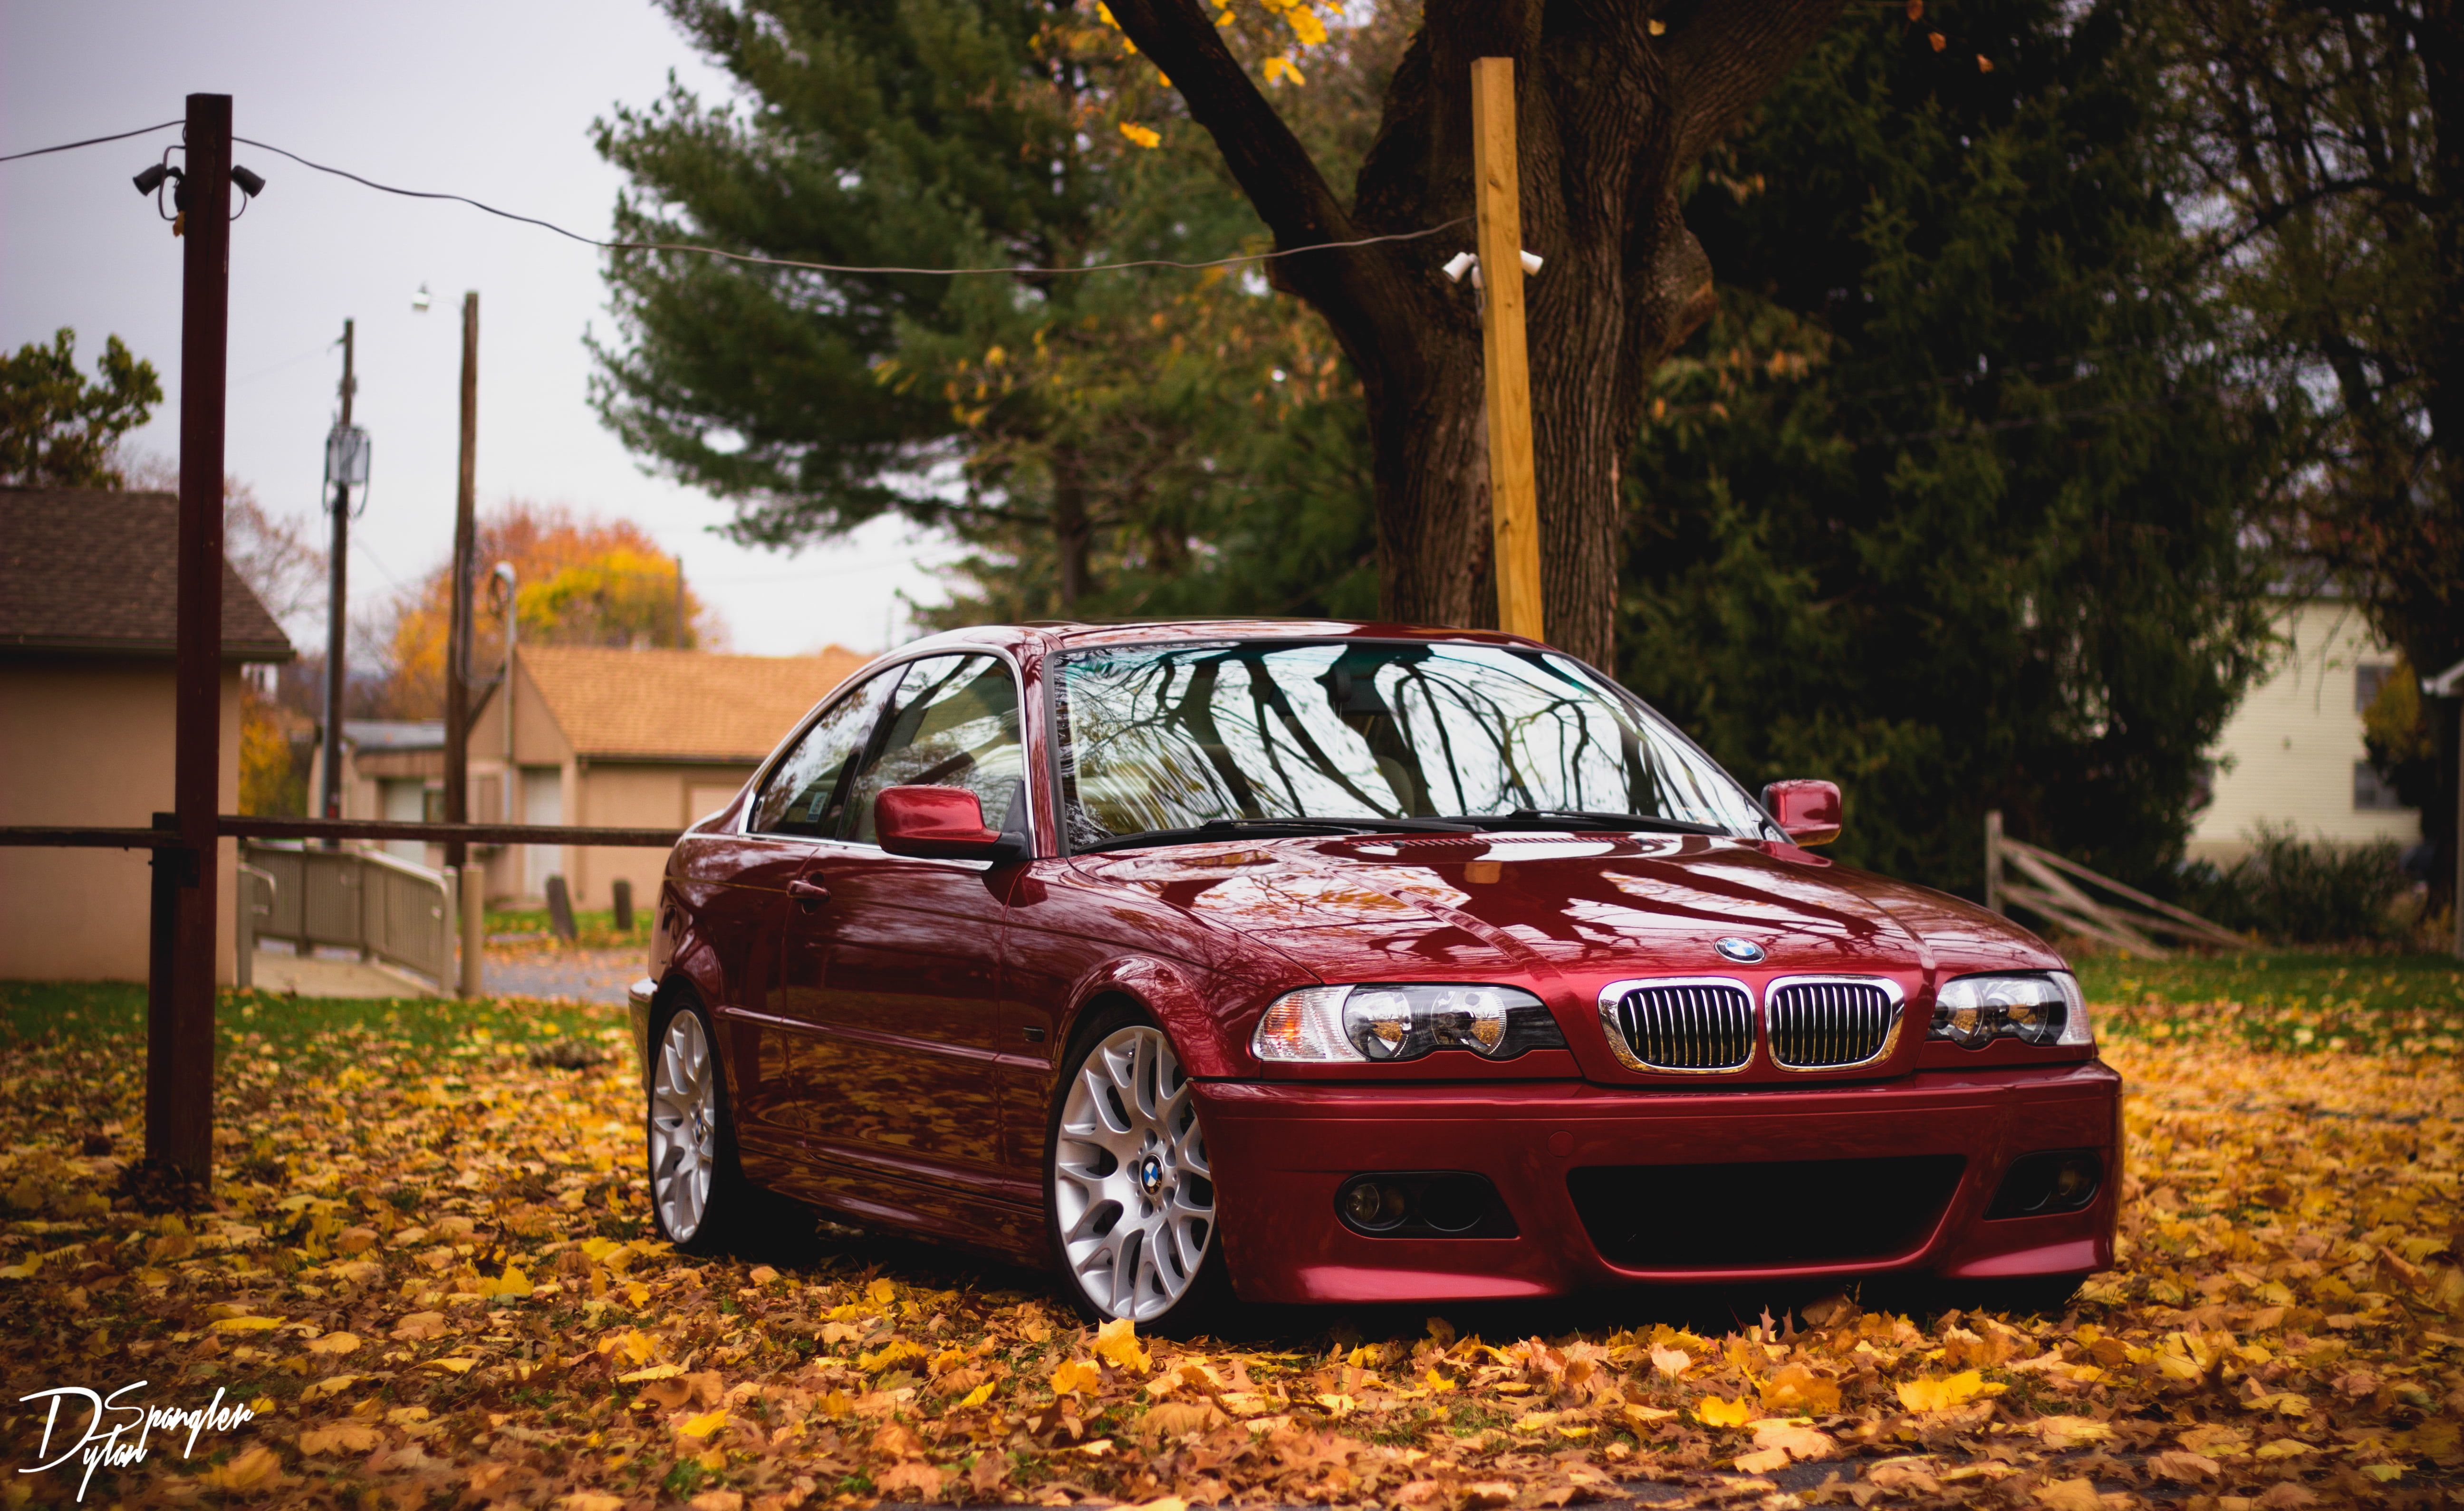 red BMW E46 sedan #bmw #red side view #foliage #autumn K #wallpaper #hdwallpaper #desktop. Bmw e46 sedan, Bmw red, Bmw